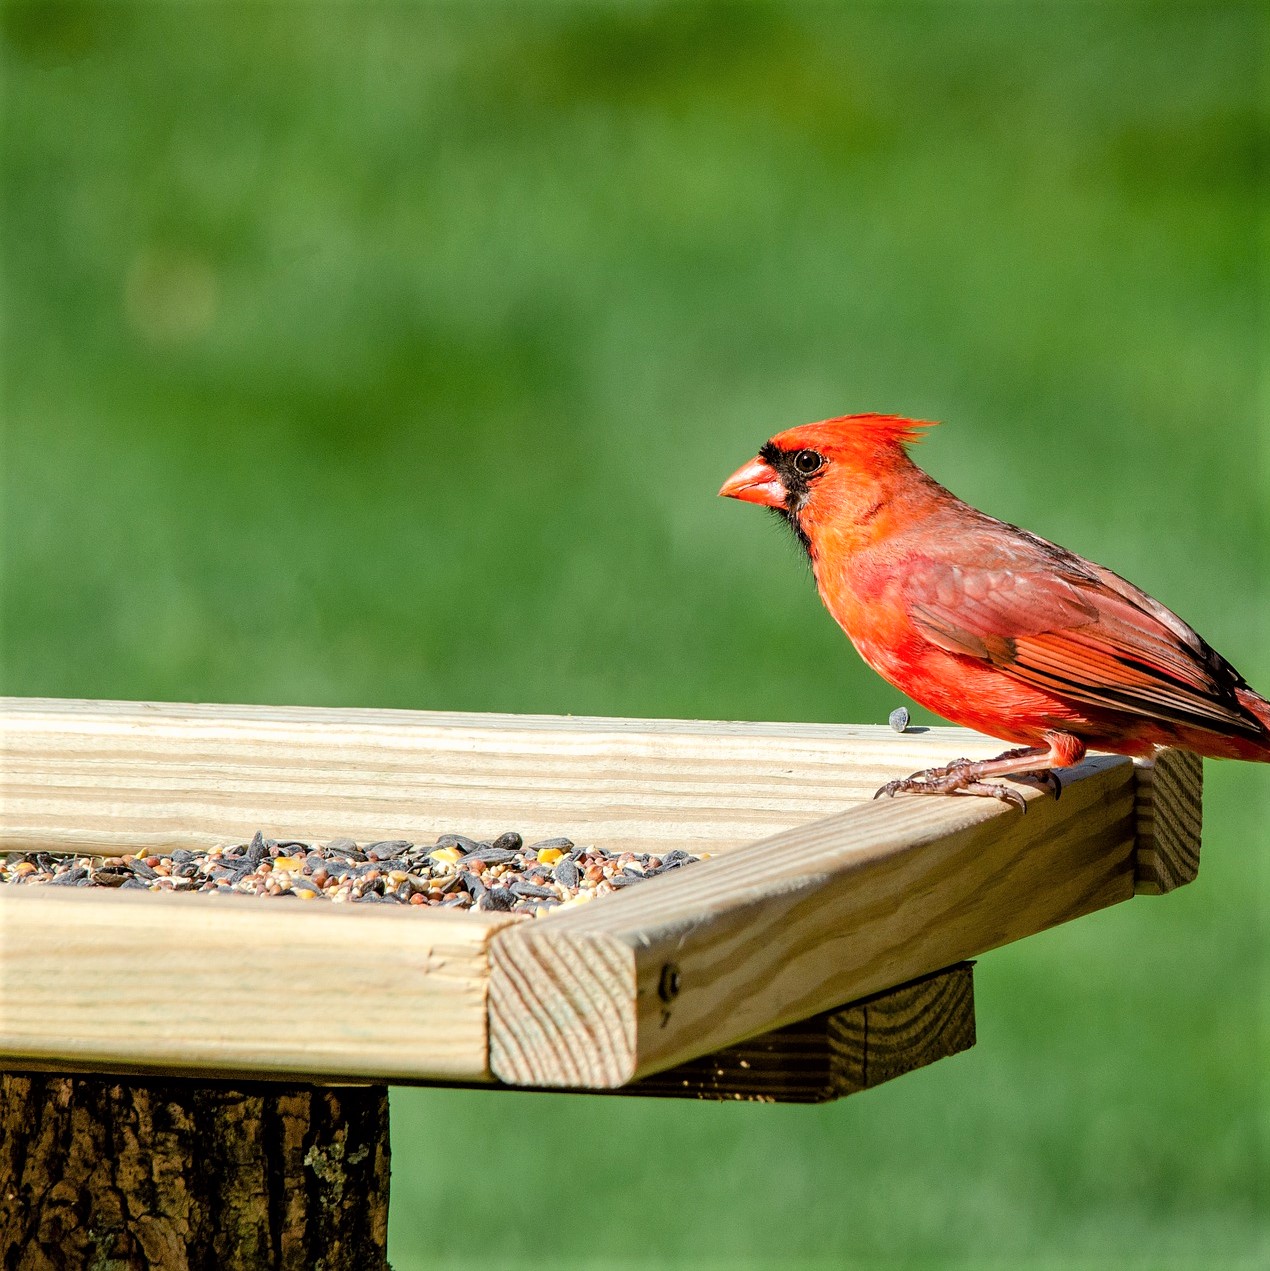 mangeoire à oiseau en bois, avec des graines dedans, et un bel oiseau rouge venu les manger.